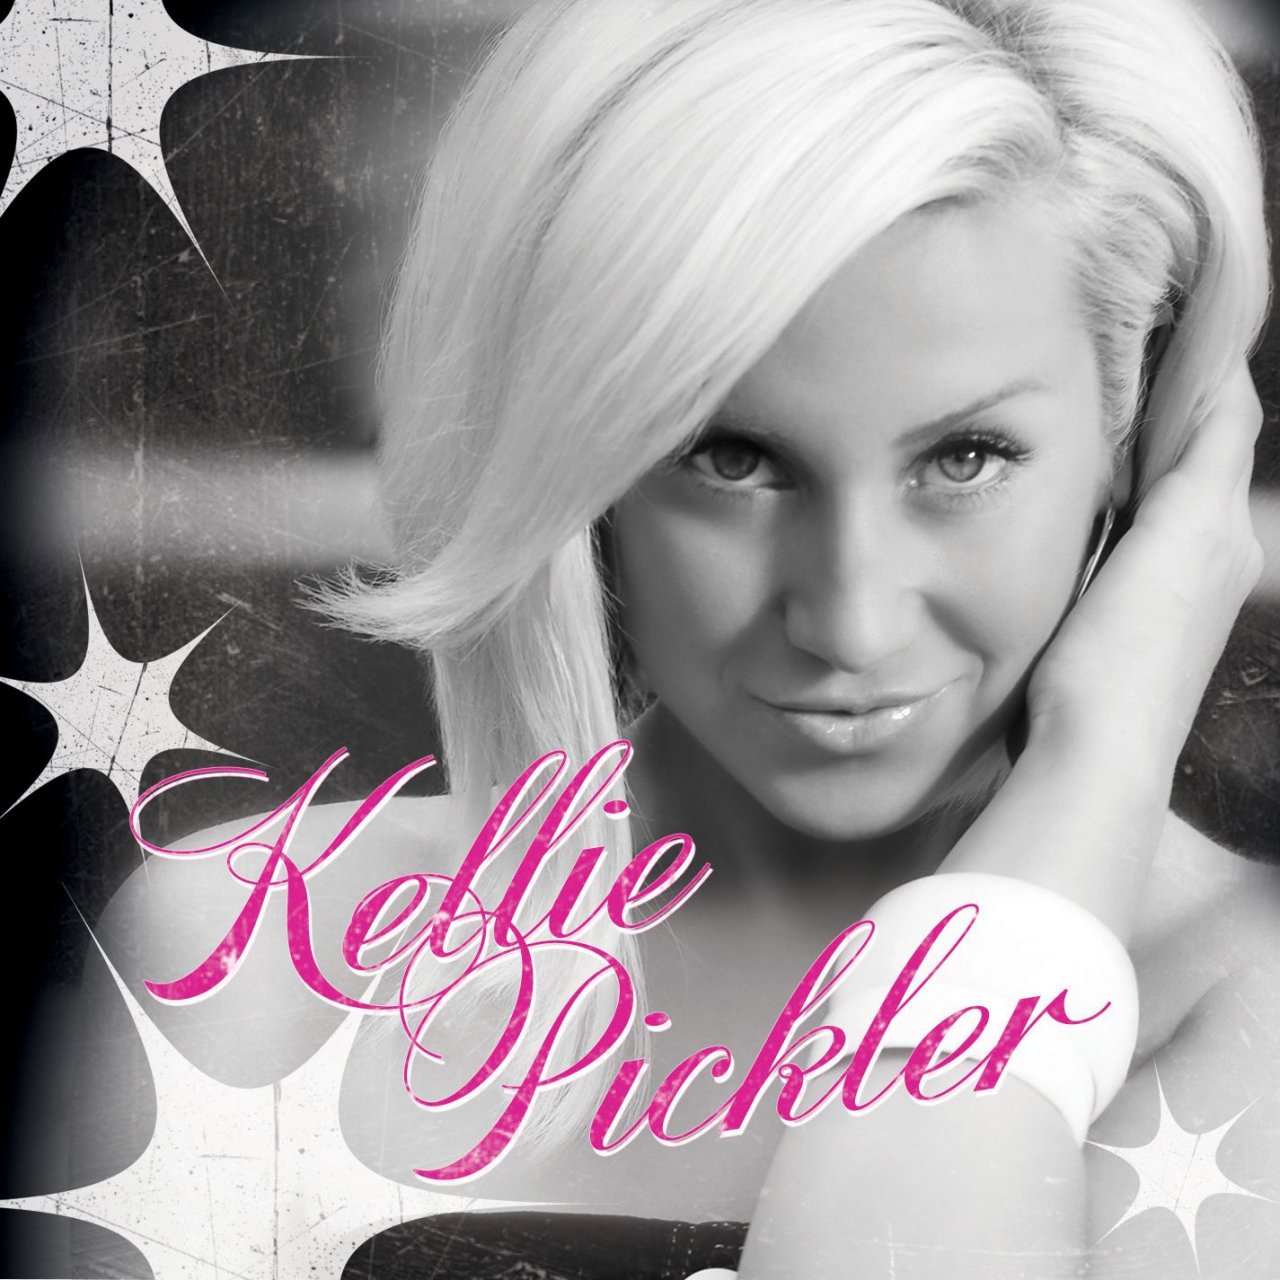 Kellie Pickler leaked wallpapers